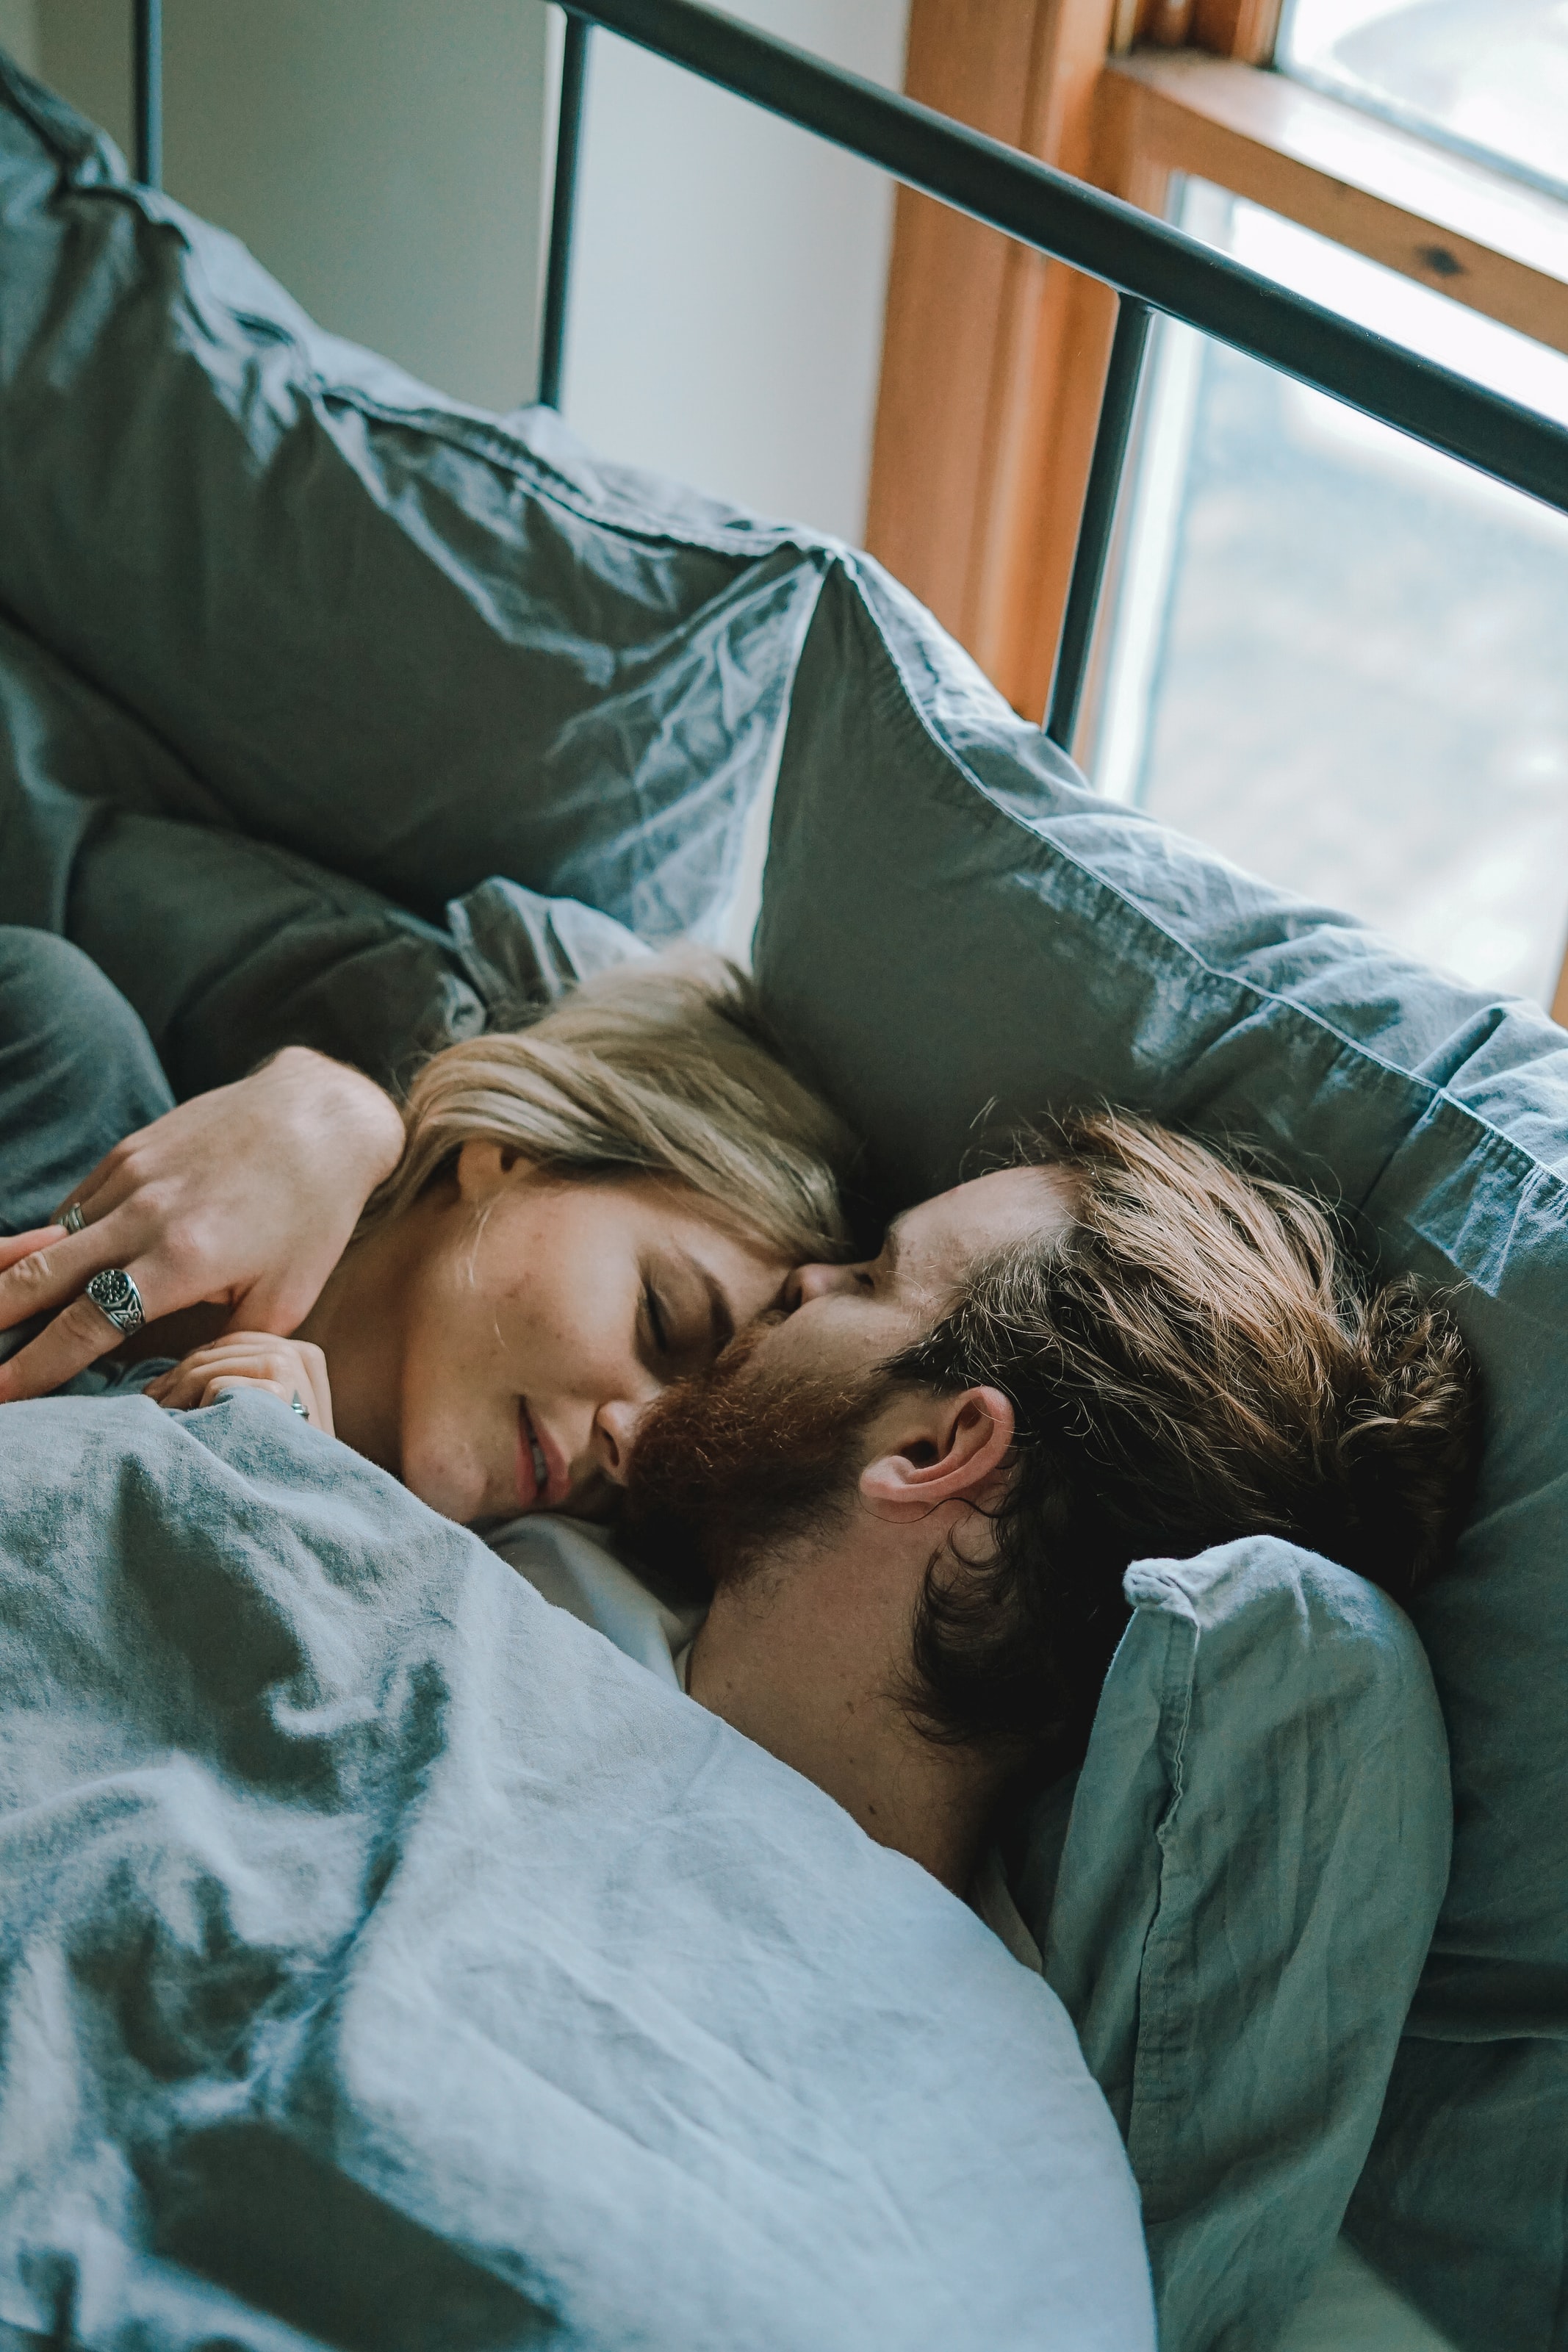 Comment bien dormir en couple ? L'indépendance de couchage